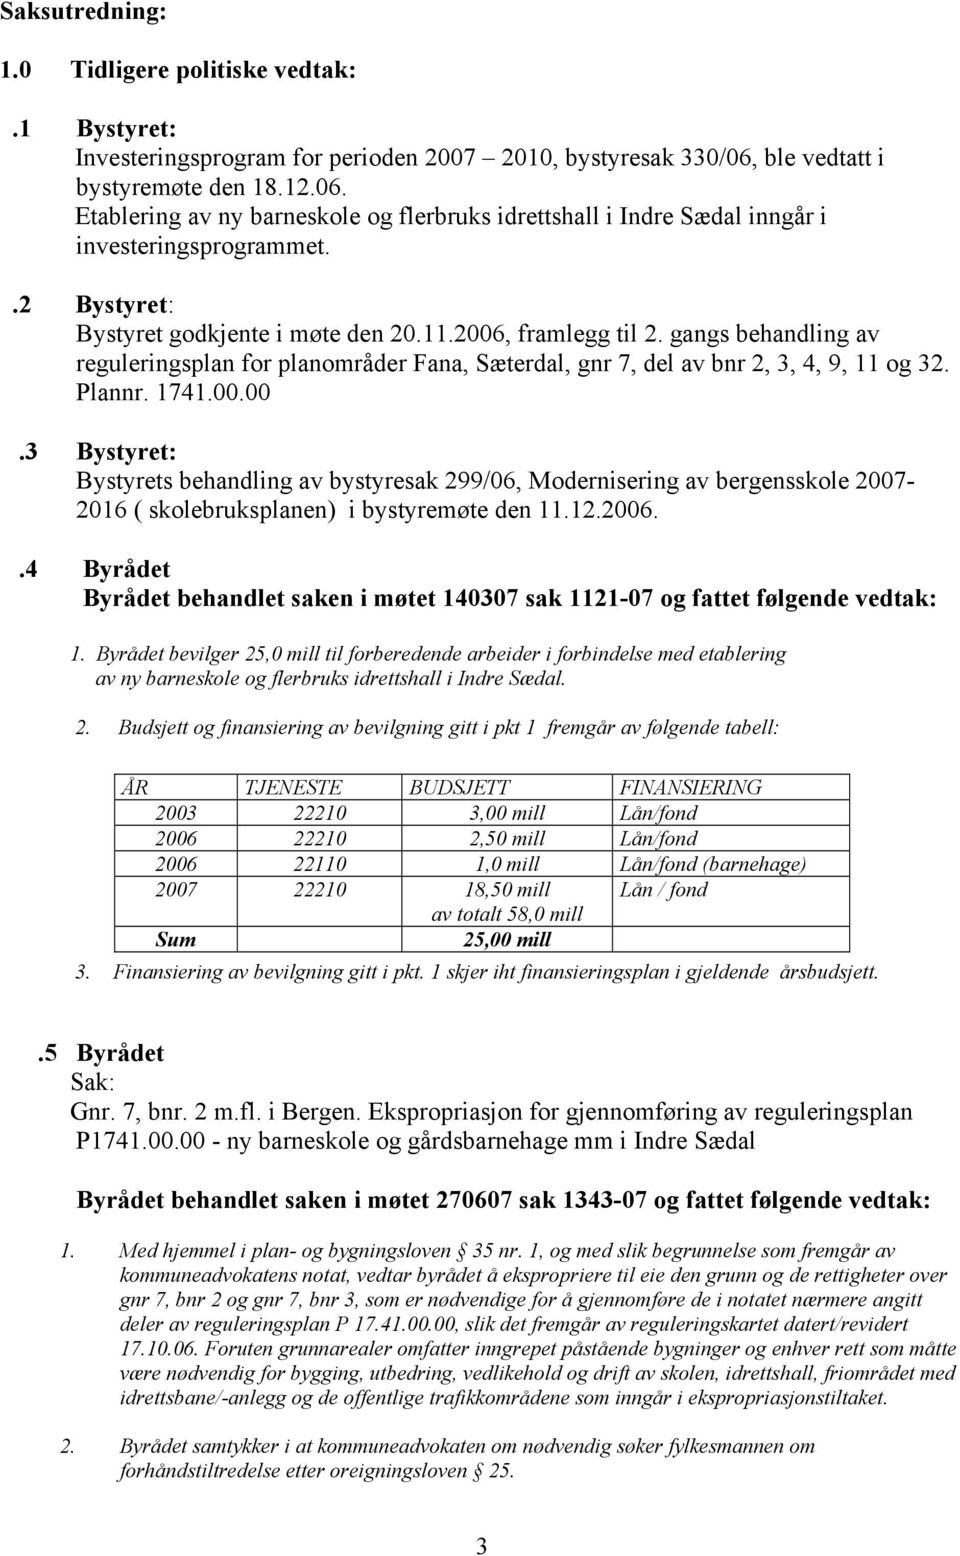 2006, framlegg til 2. gangs behandling av reguleringsplan for planområder Fana, Sæterdal, gnr 7, del av bnr 2, 3, 4, 9, 11 og 32. Plannr. 1741.00.00.3 Bystyret: Bystyrets behandling av bystyresak 299/06, Modernisering av bergensskole 2007-2016 ( skolebruksplanen) i bystyremøte den 11.